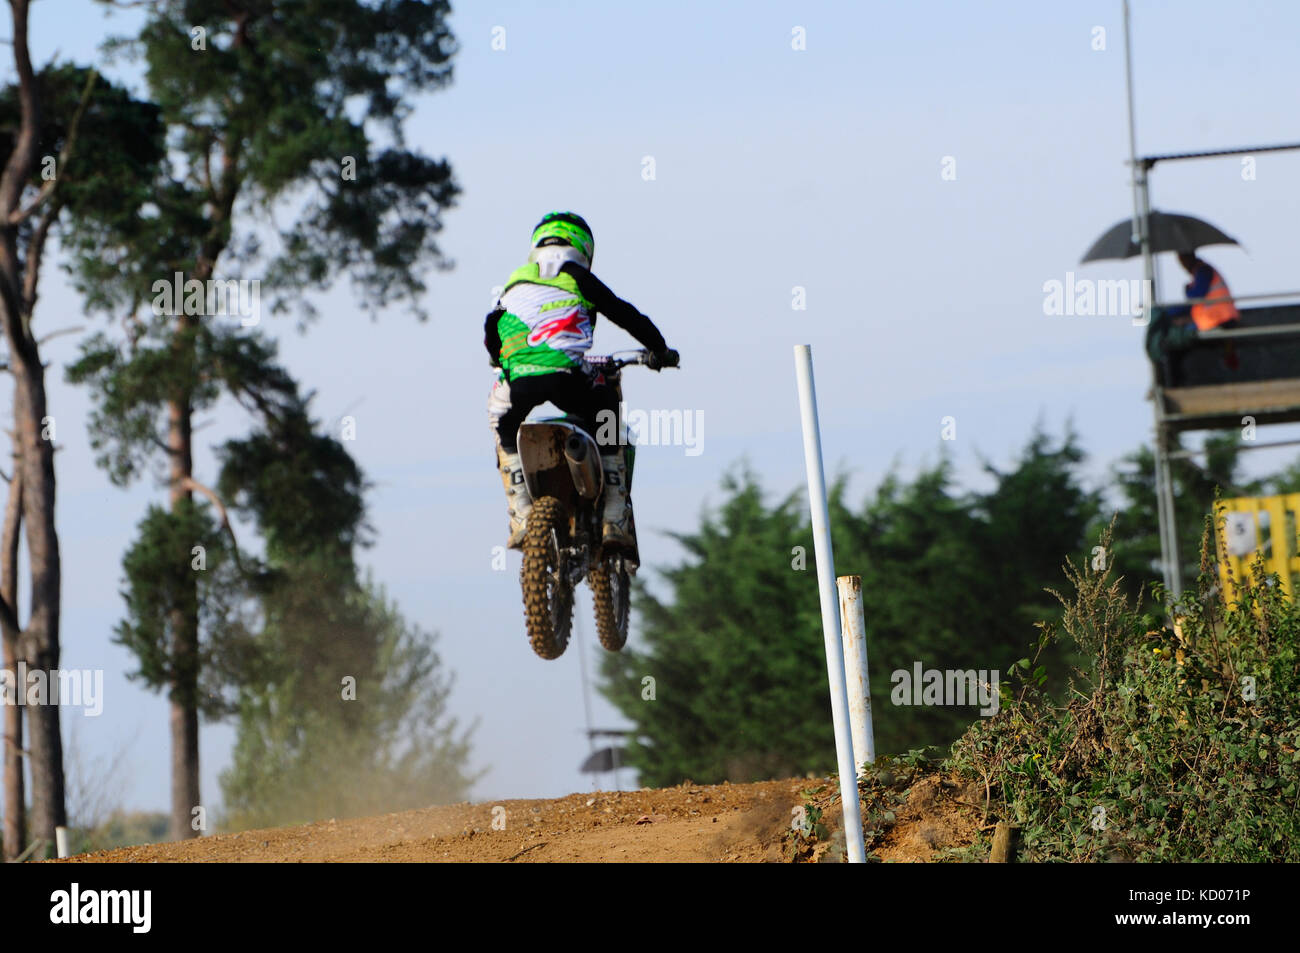 Motocross en action Banque D'Images